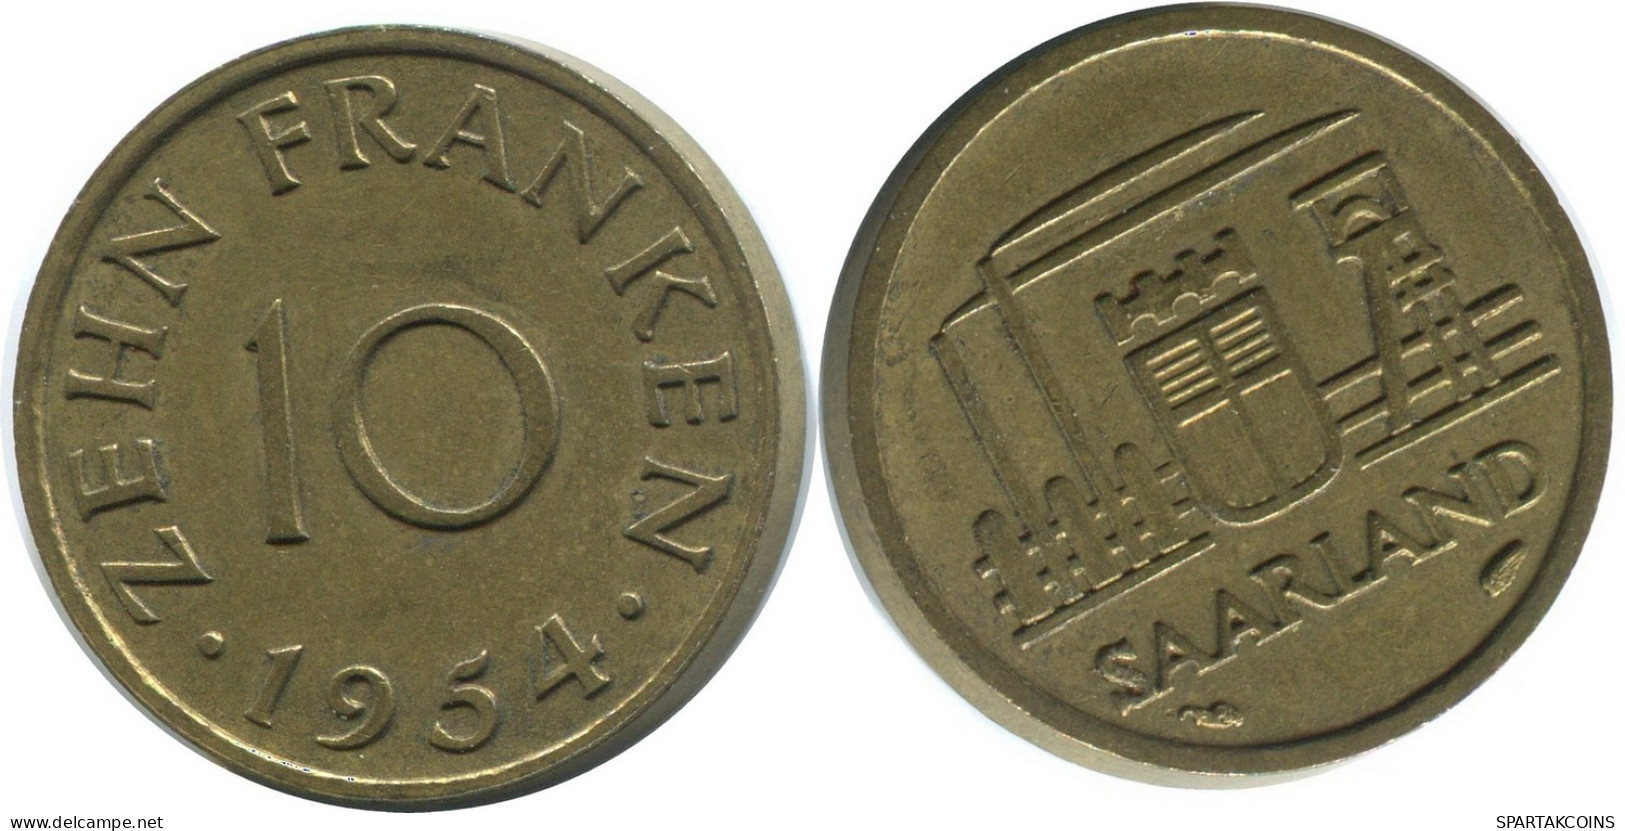 10 FRANKEN 1954 SAARLAND DEUTSCHLAND Münze GERMANY #AD785.9.D - 10 Francos